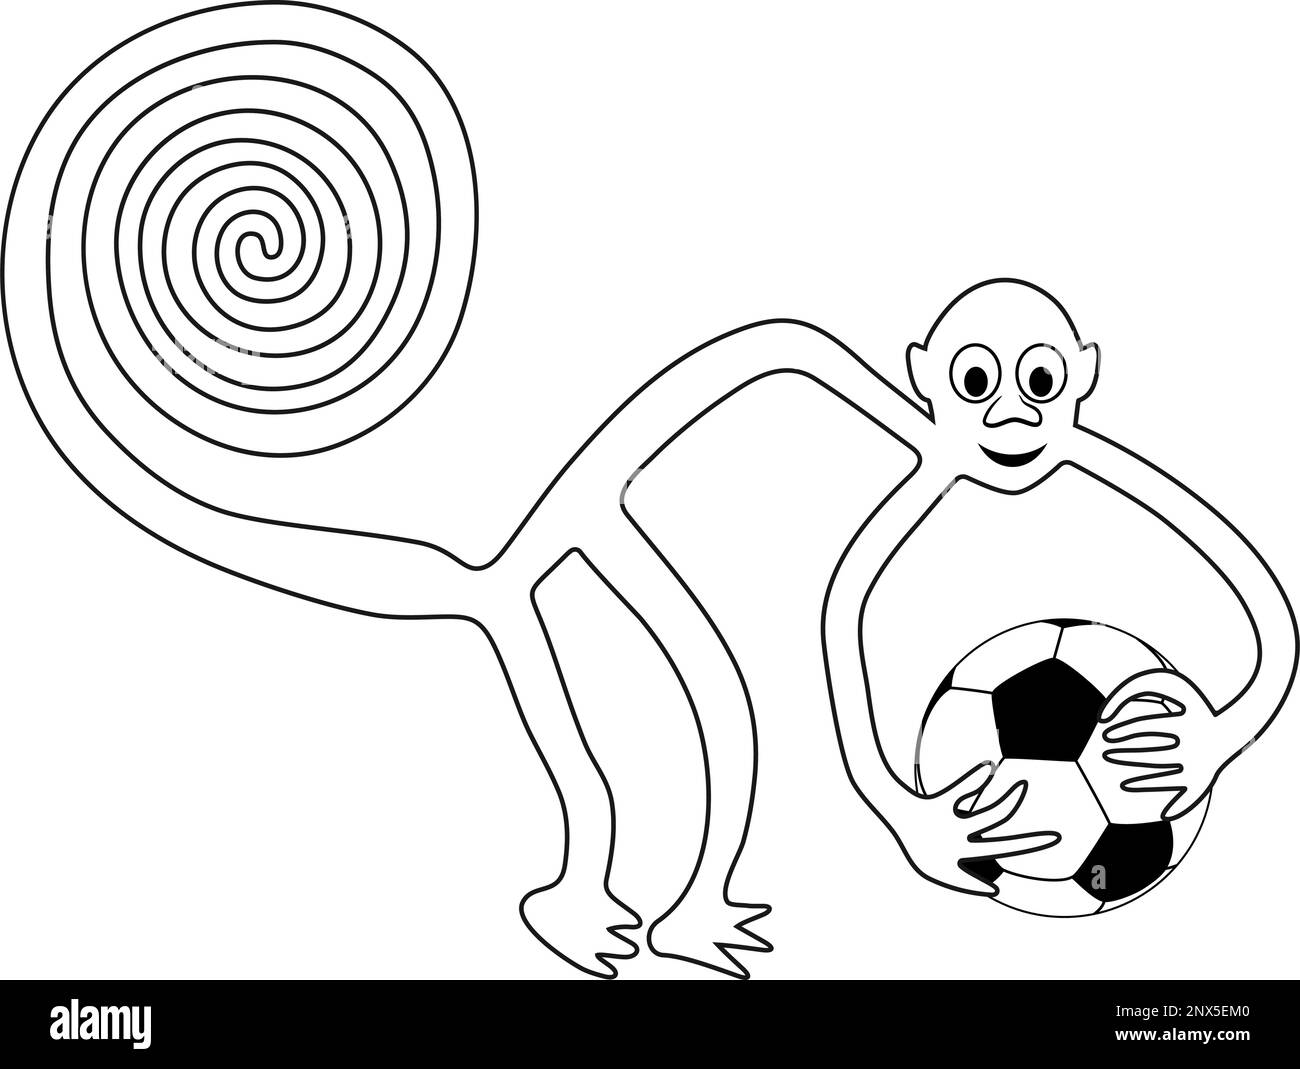 Affe mit dem Fußball in den Händen - Paraphrase der berühmten Geoglyphe des Affen aus Nazca Stock Vektor